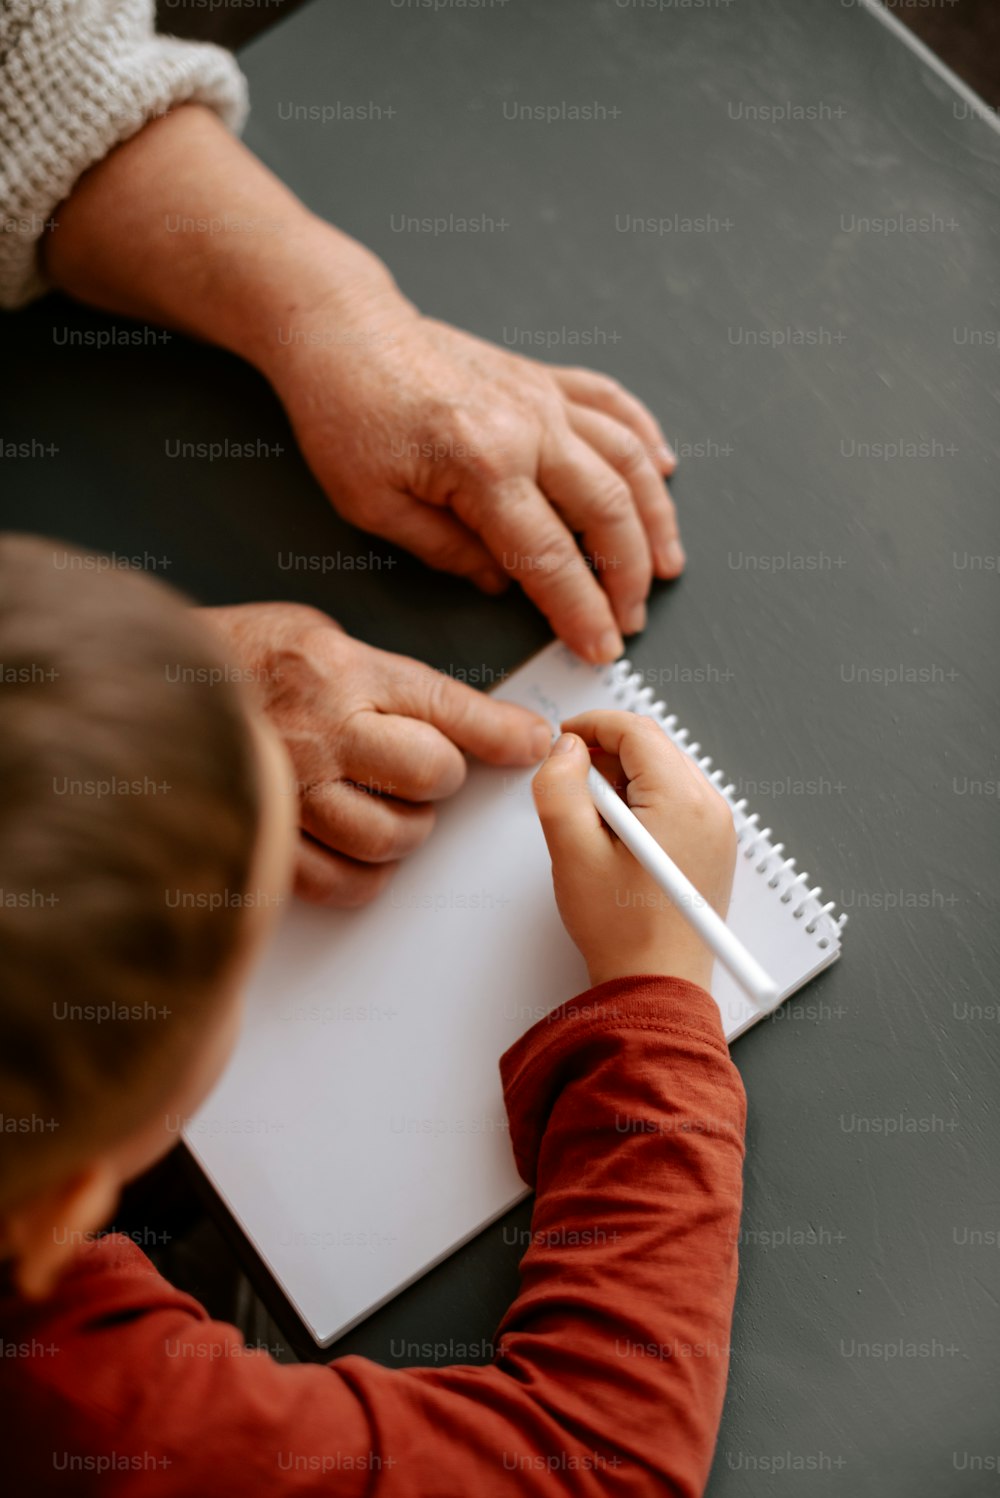 Un enfant écrit sur un bloc-notes avec un crayon